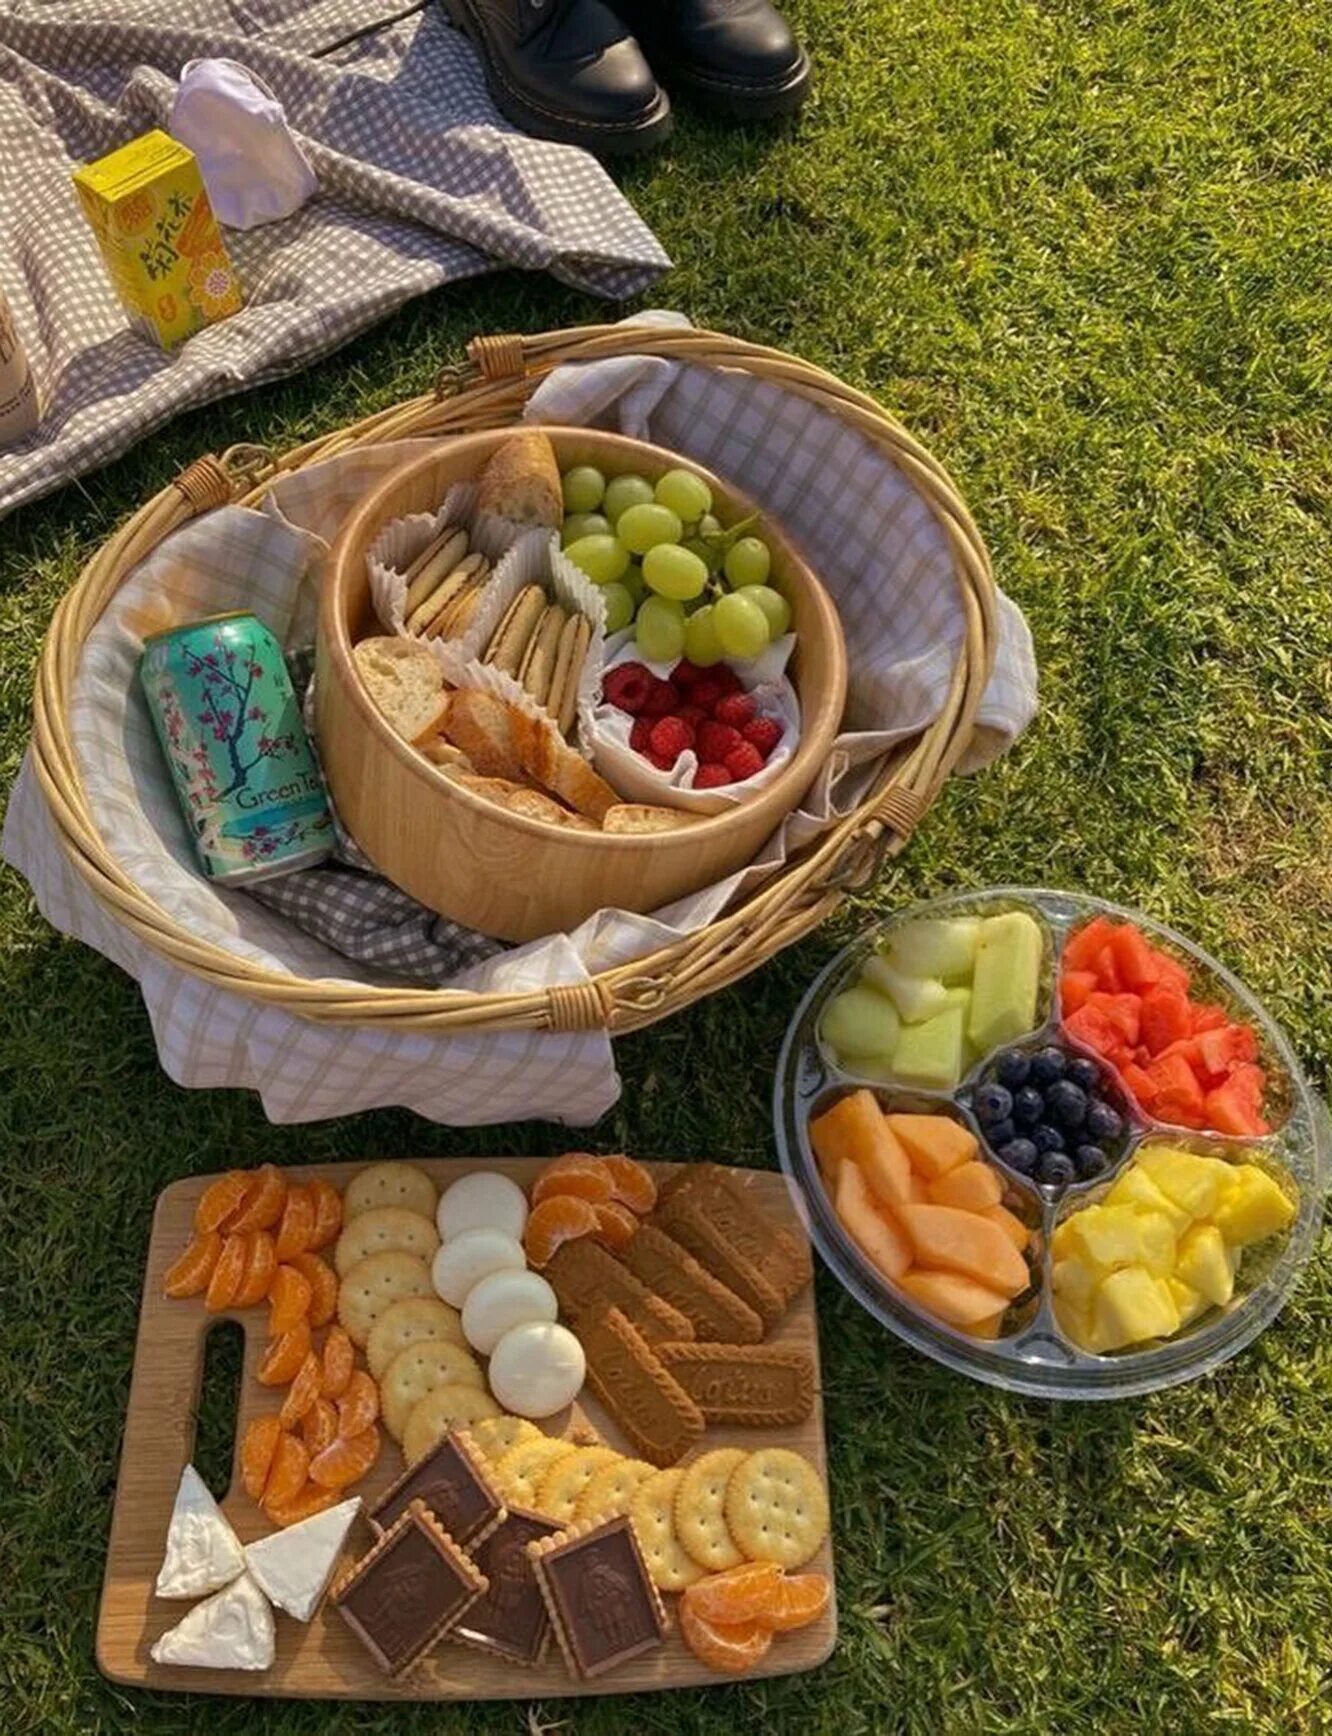 Что из продуктов можно взять. Еда на пикник. Продукты на пикник. Пикник с фруктами. Закуски на пикник.